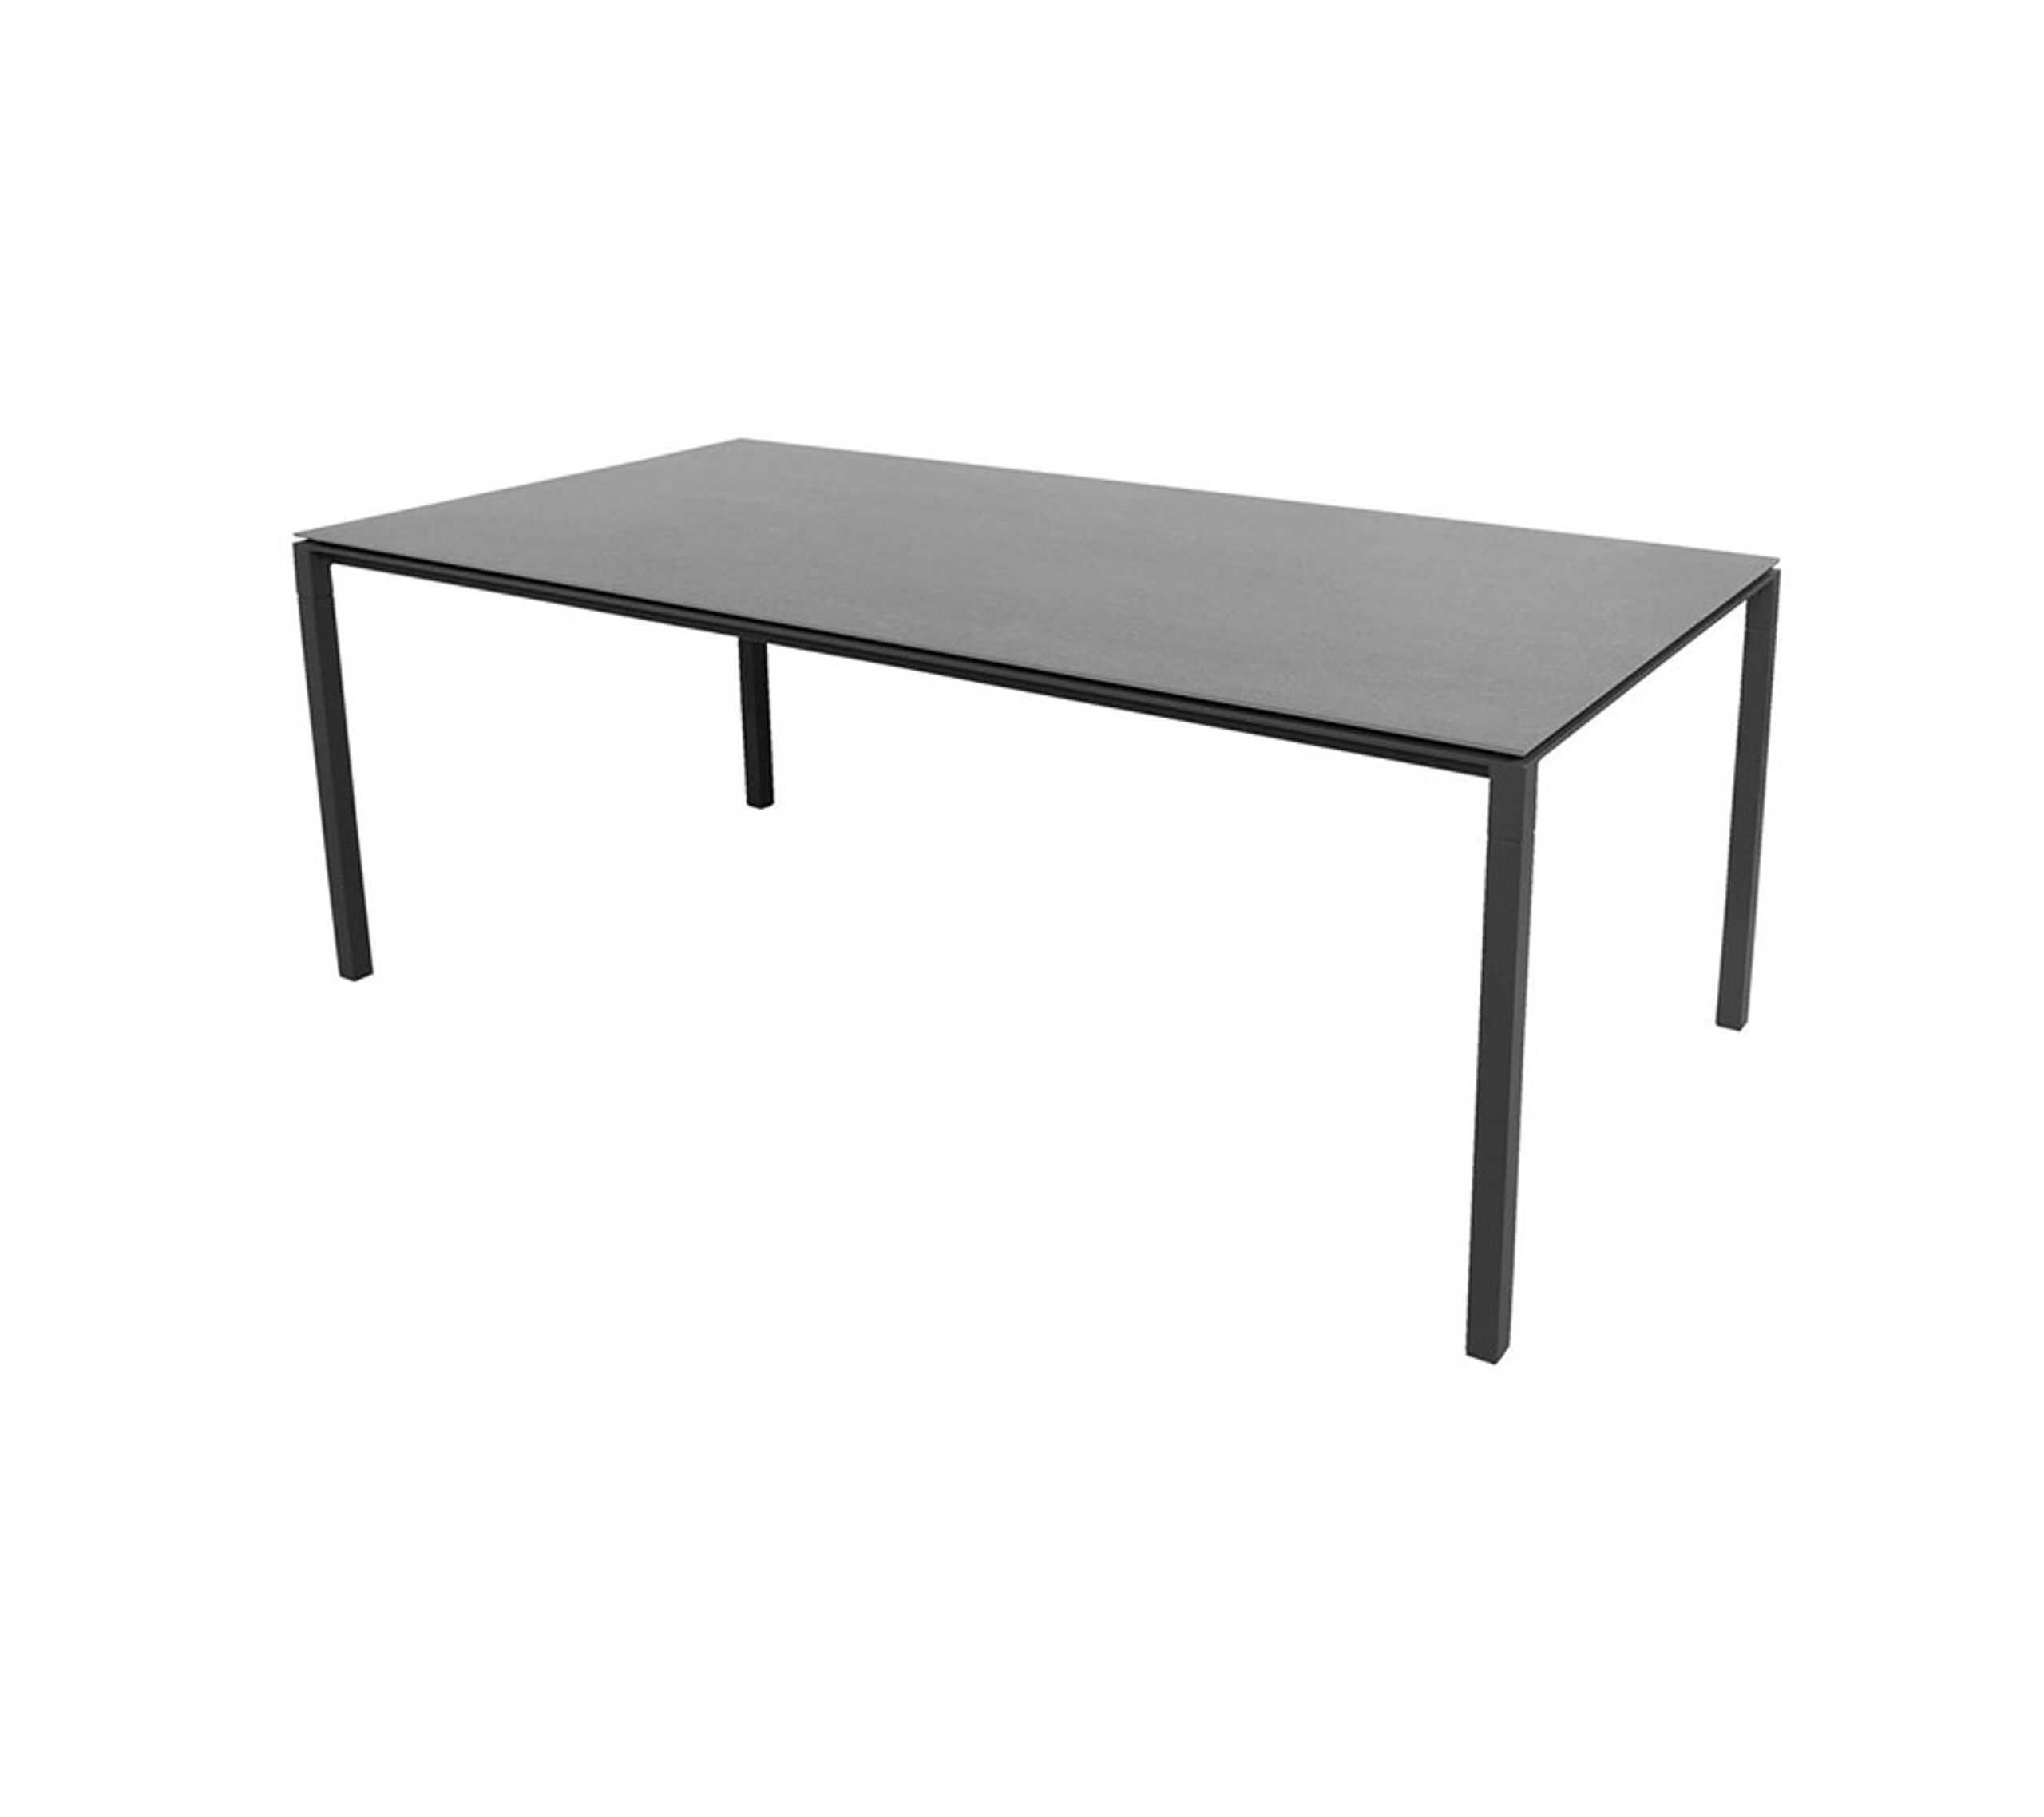 Cane-line - Spisebord - Pure Table - 200x100 - Stel: Lavagrå Aluminium / Bordplade: Basaltgrå Keramik